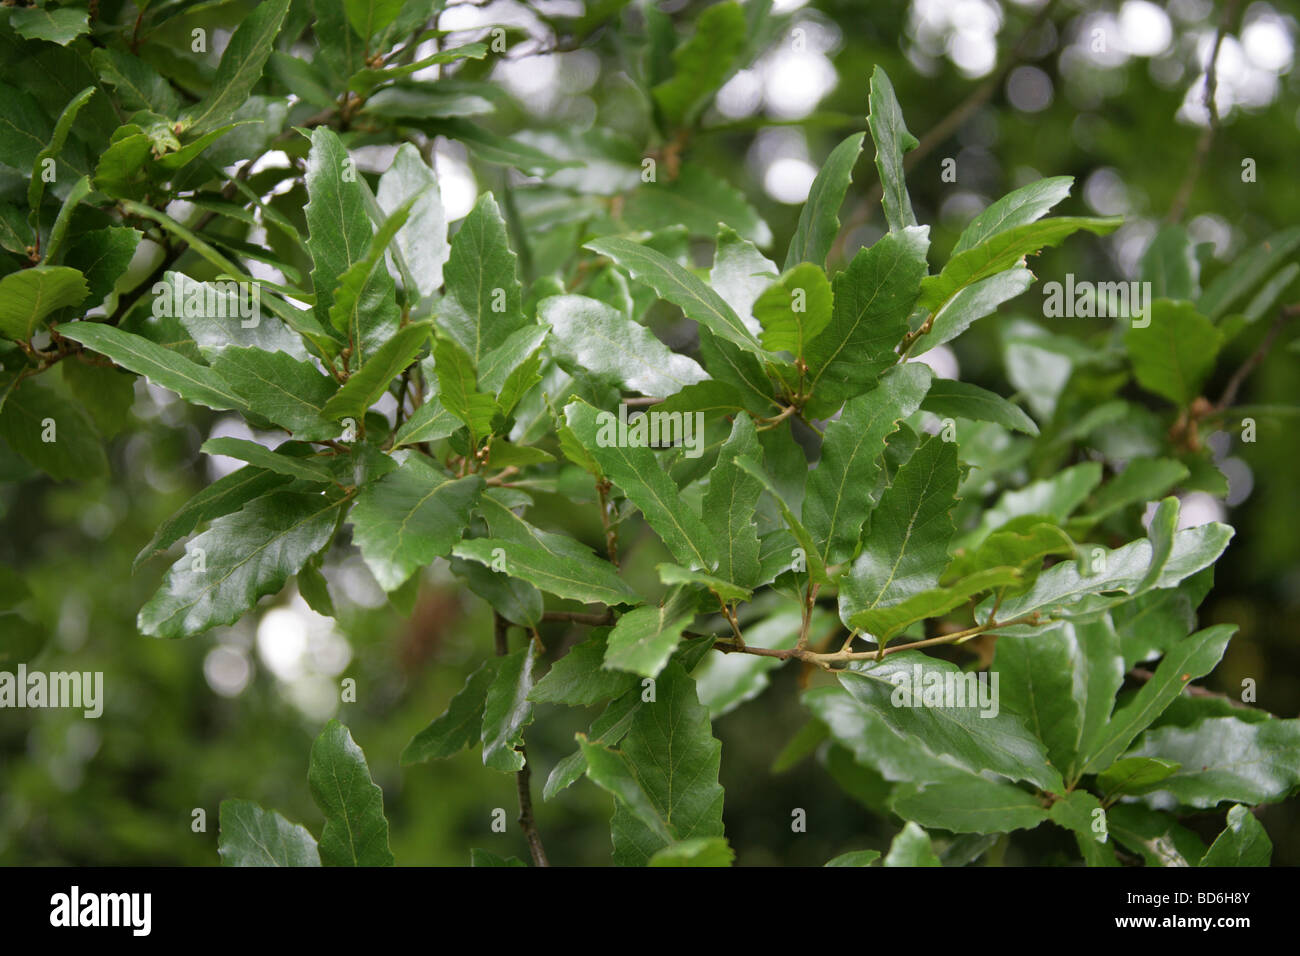 Les feuilles des arbres de chêne macédonienne, Quercus trojana syn Q. macedonicus, Fagaceae, sud-est de l'Europe. Banque D'Images